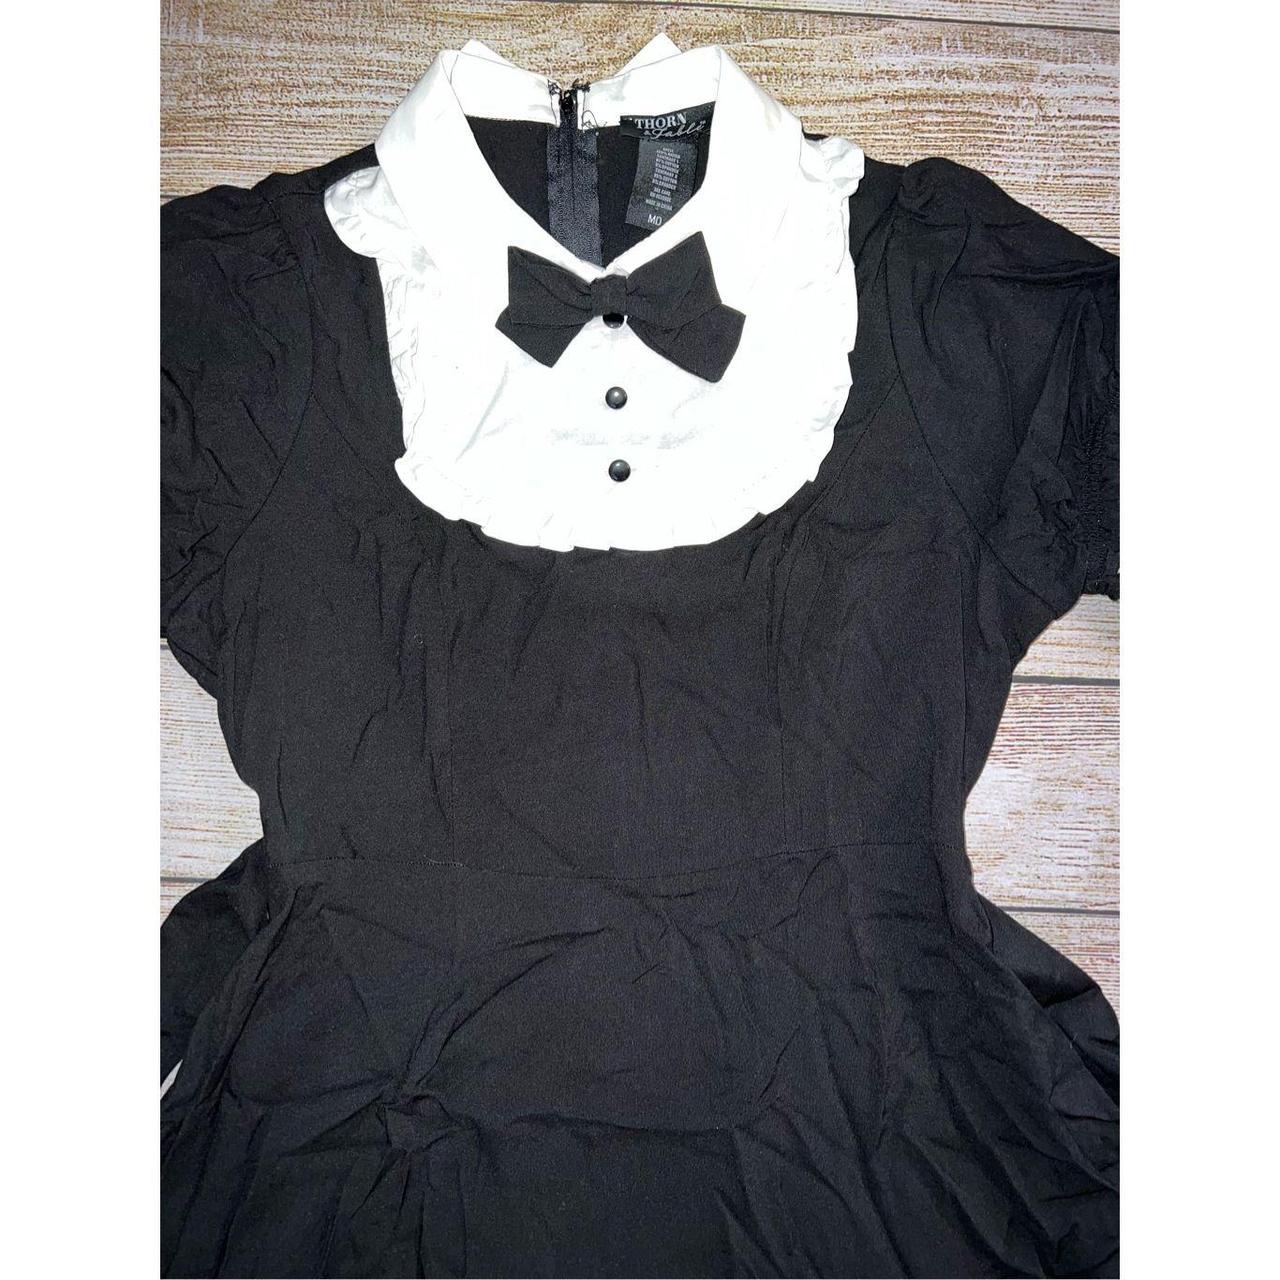 Hot Topic Black & White Stripe Twofer Dress